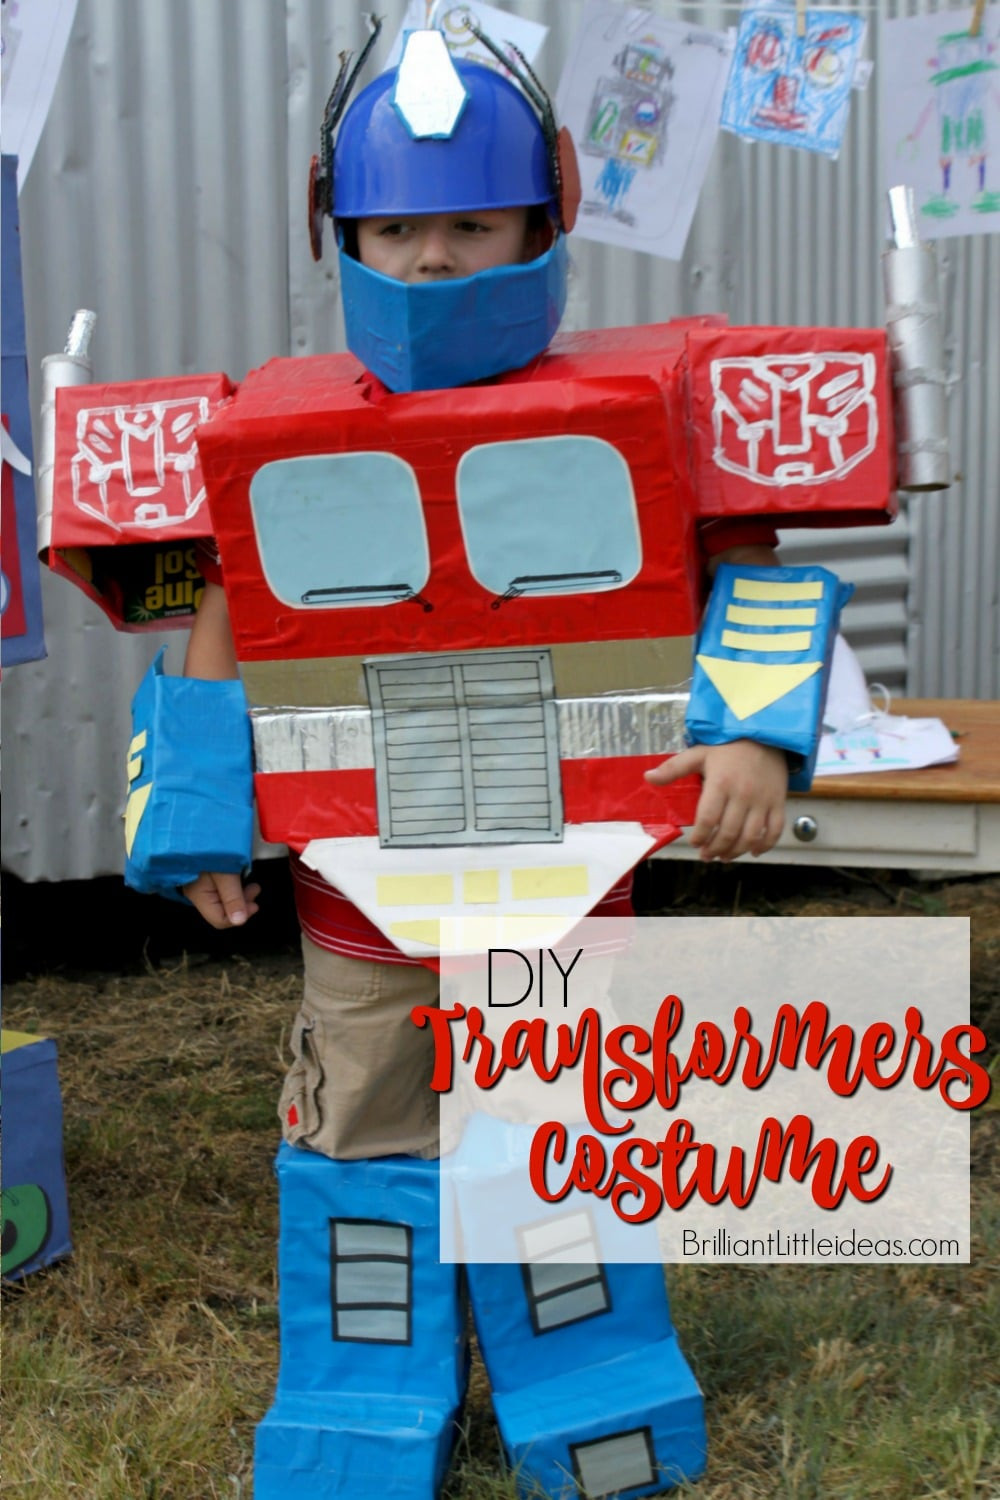 DIY Transformers Costumes
 DIY Optimus Prime Transformer Costume